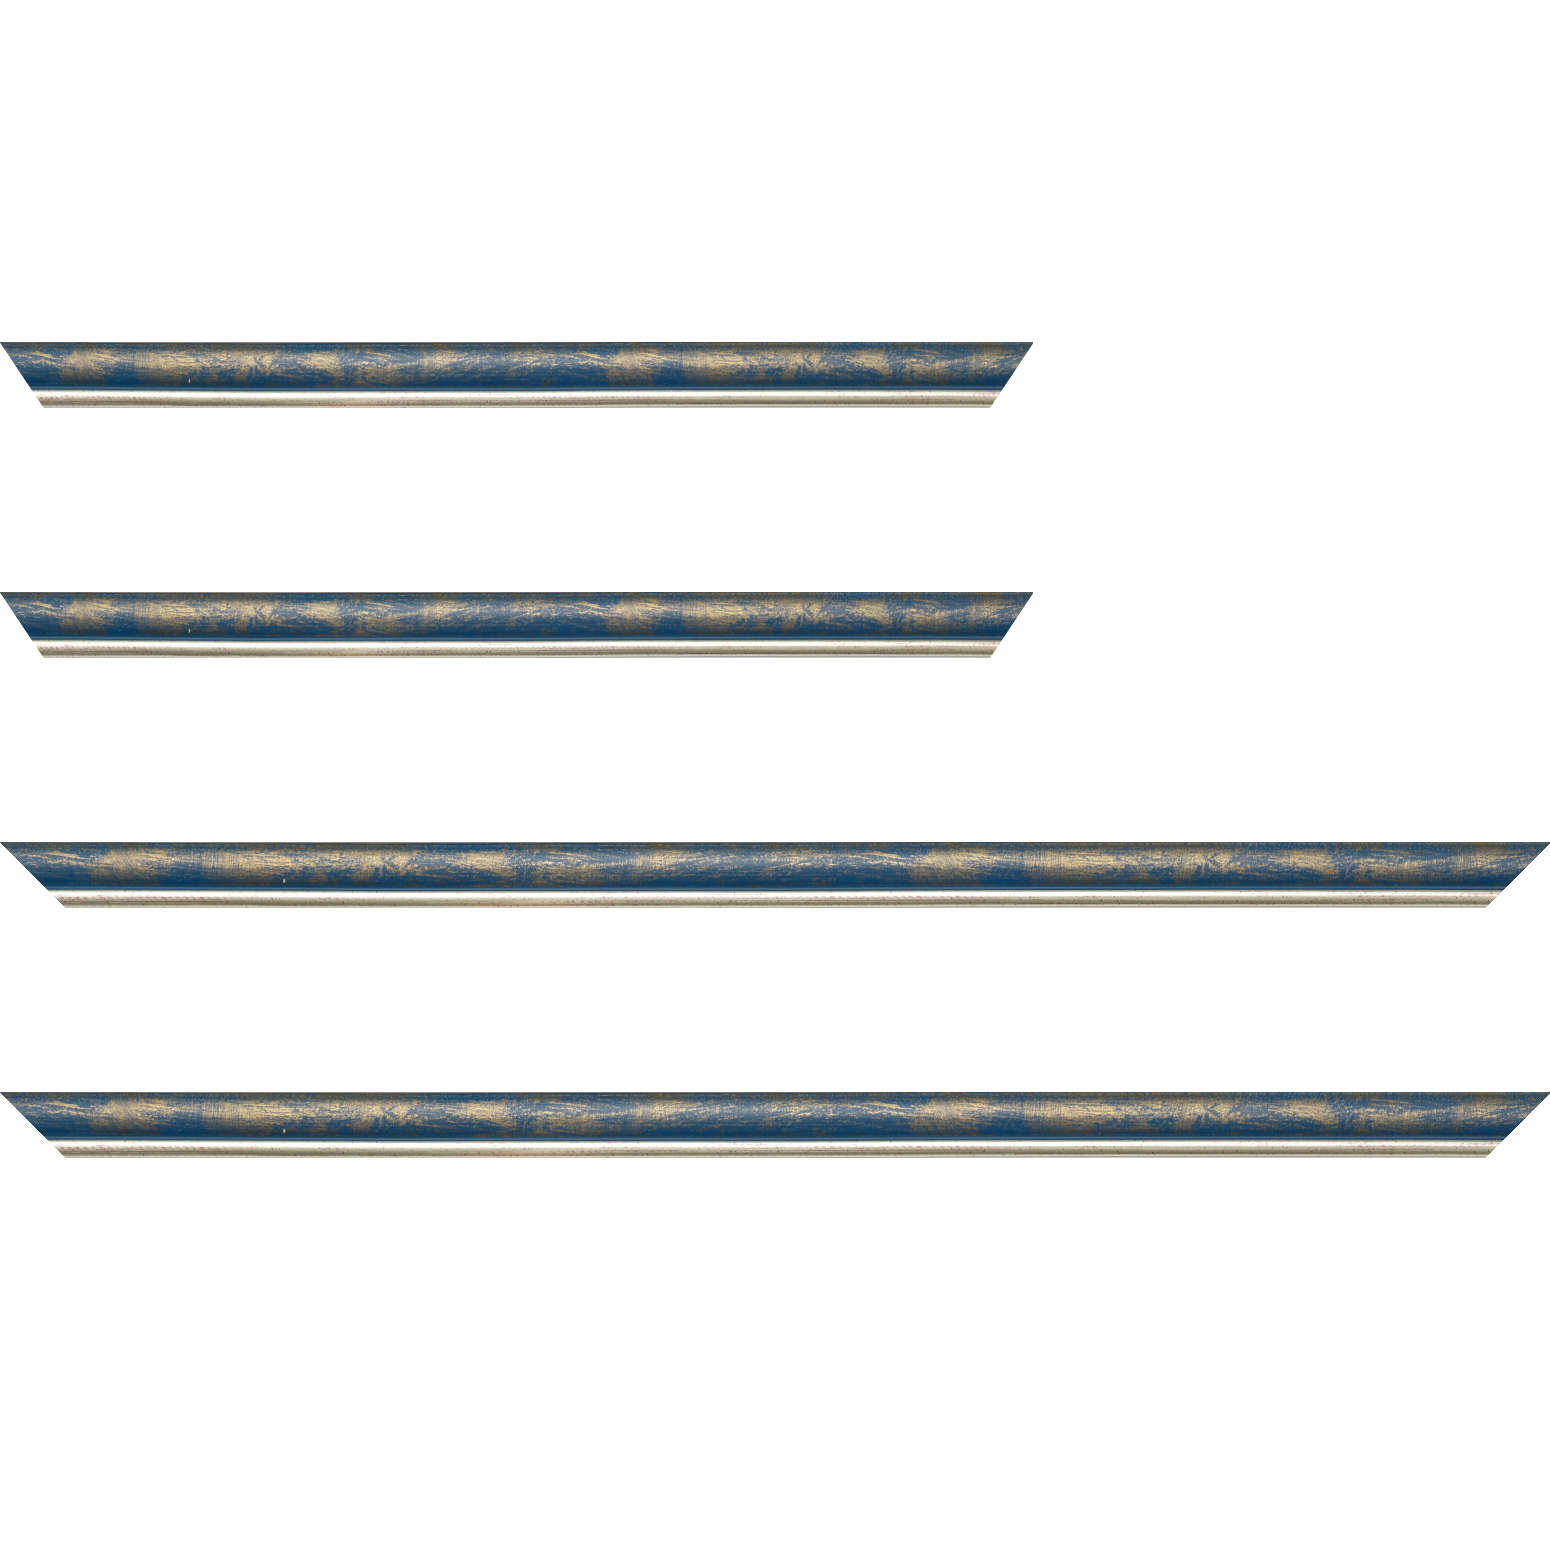 Baguette bois profil arrondi largeur 2.1cm  couleur bleu fond or filet argent chaud